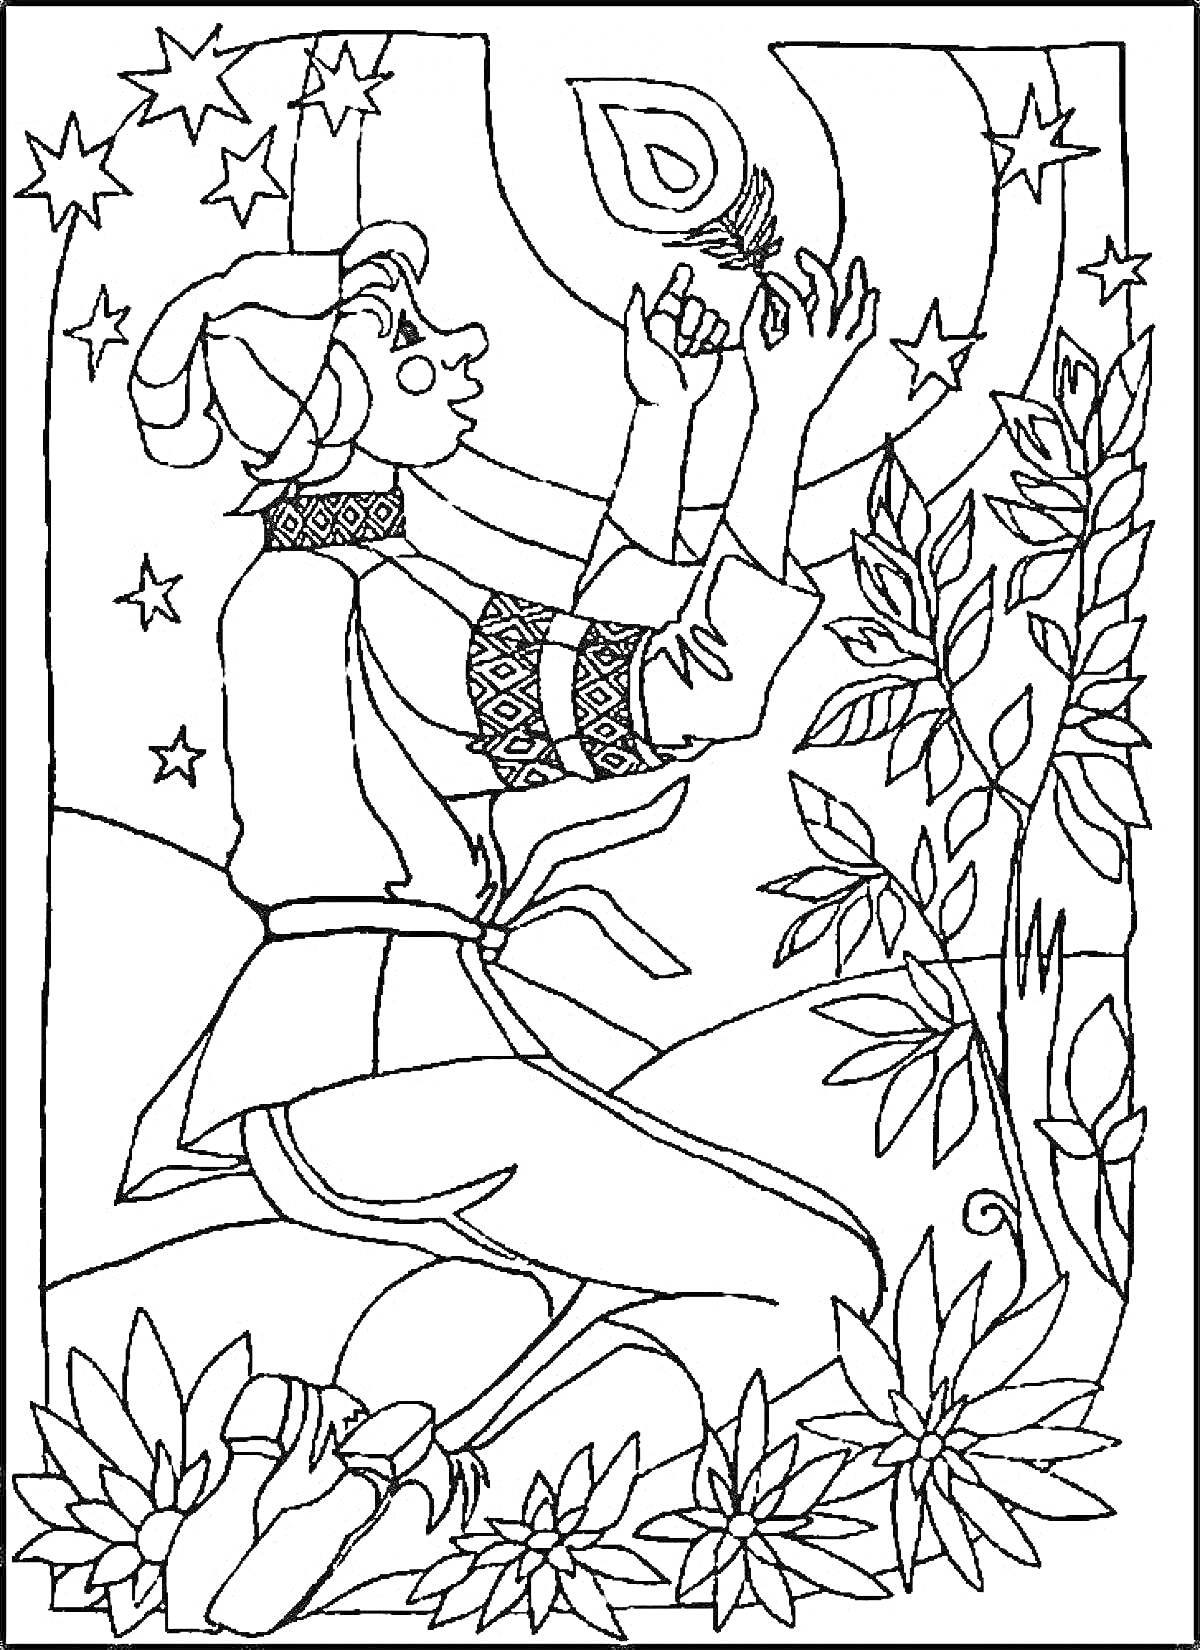 Человек в традиционной одежде на коленях с жар-птицей в руках, деревья и звезды на заднем фоне, цветы на переднем плане